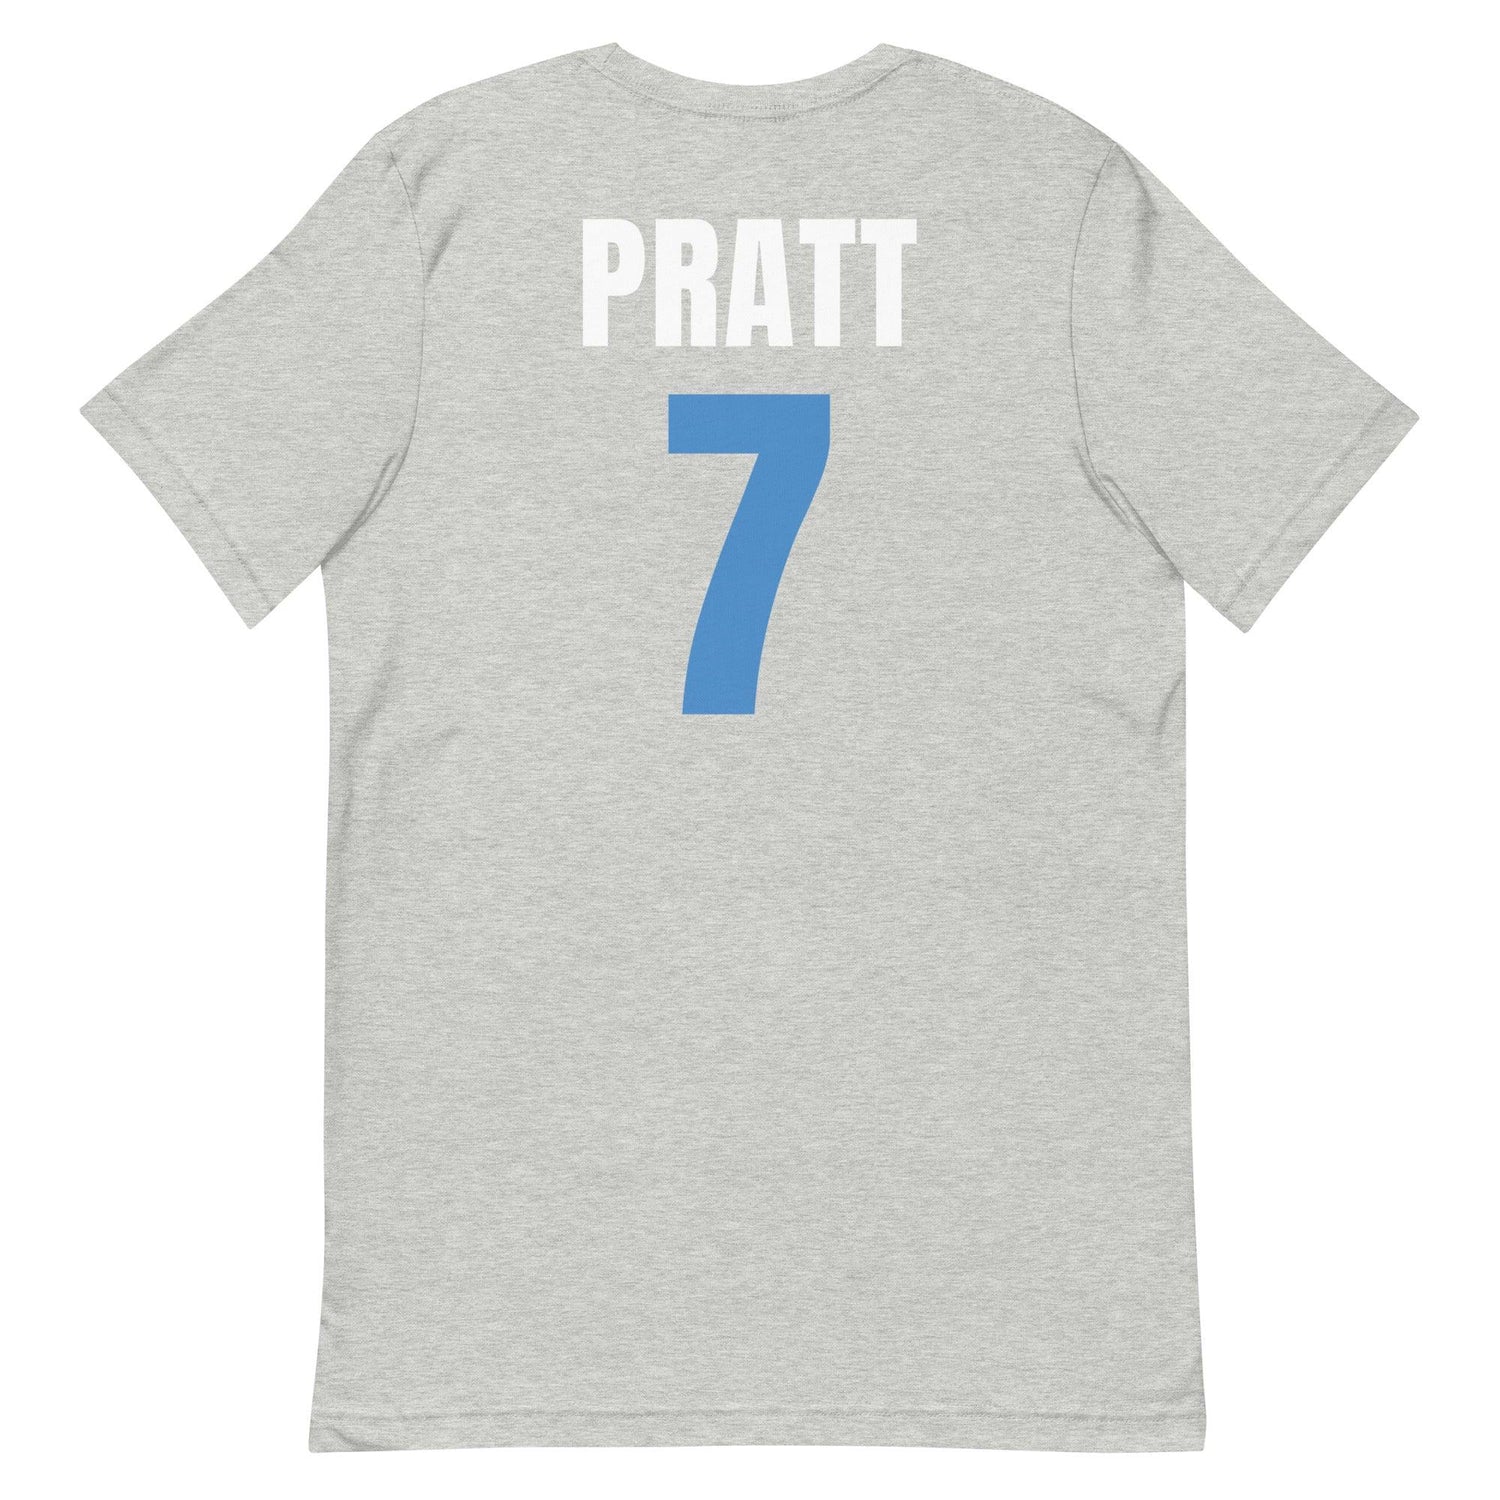 Michael Pratt "Jersey" t-shirt - Fan Arch